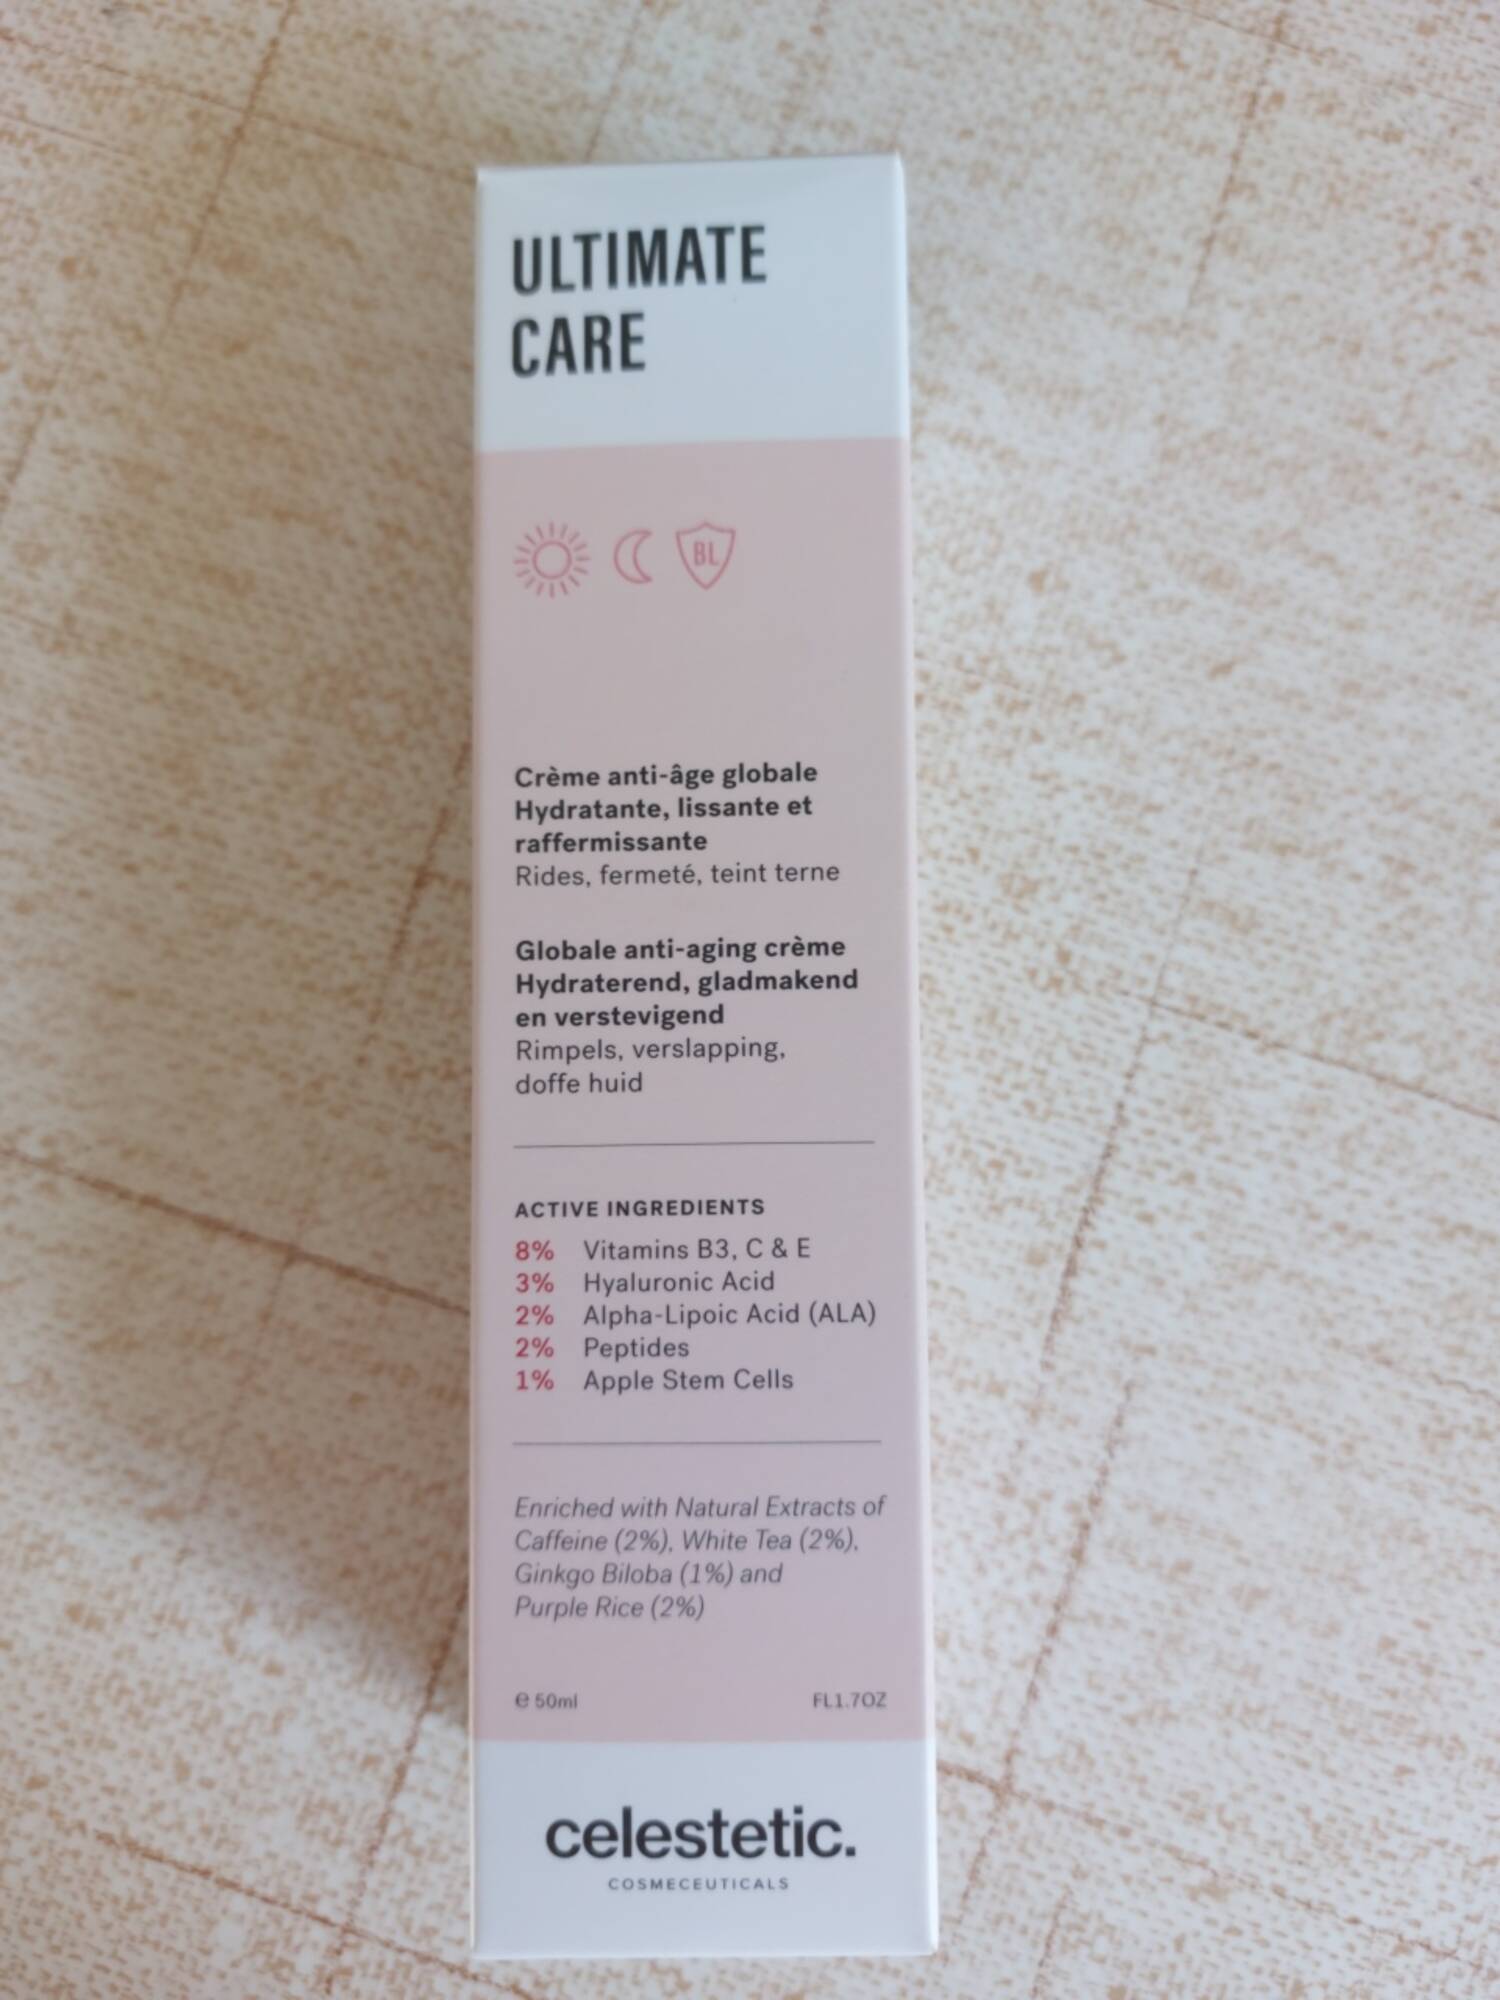 CELESTETIC. - Ultimate care - Crème anti-âge globale